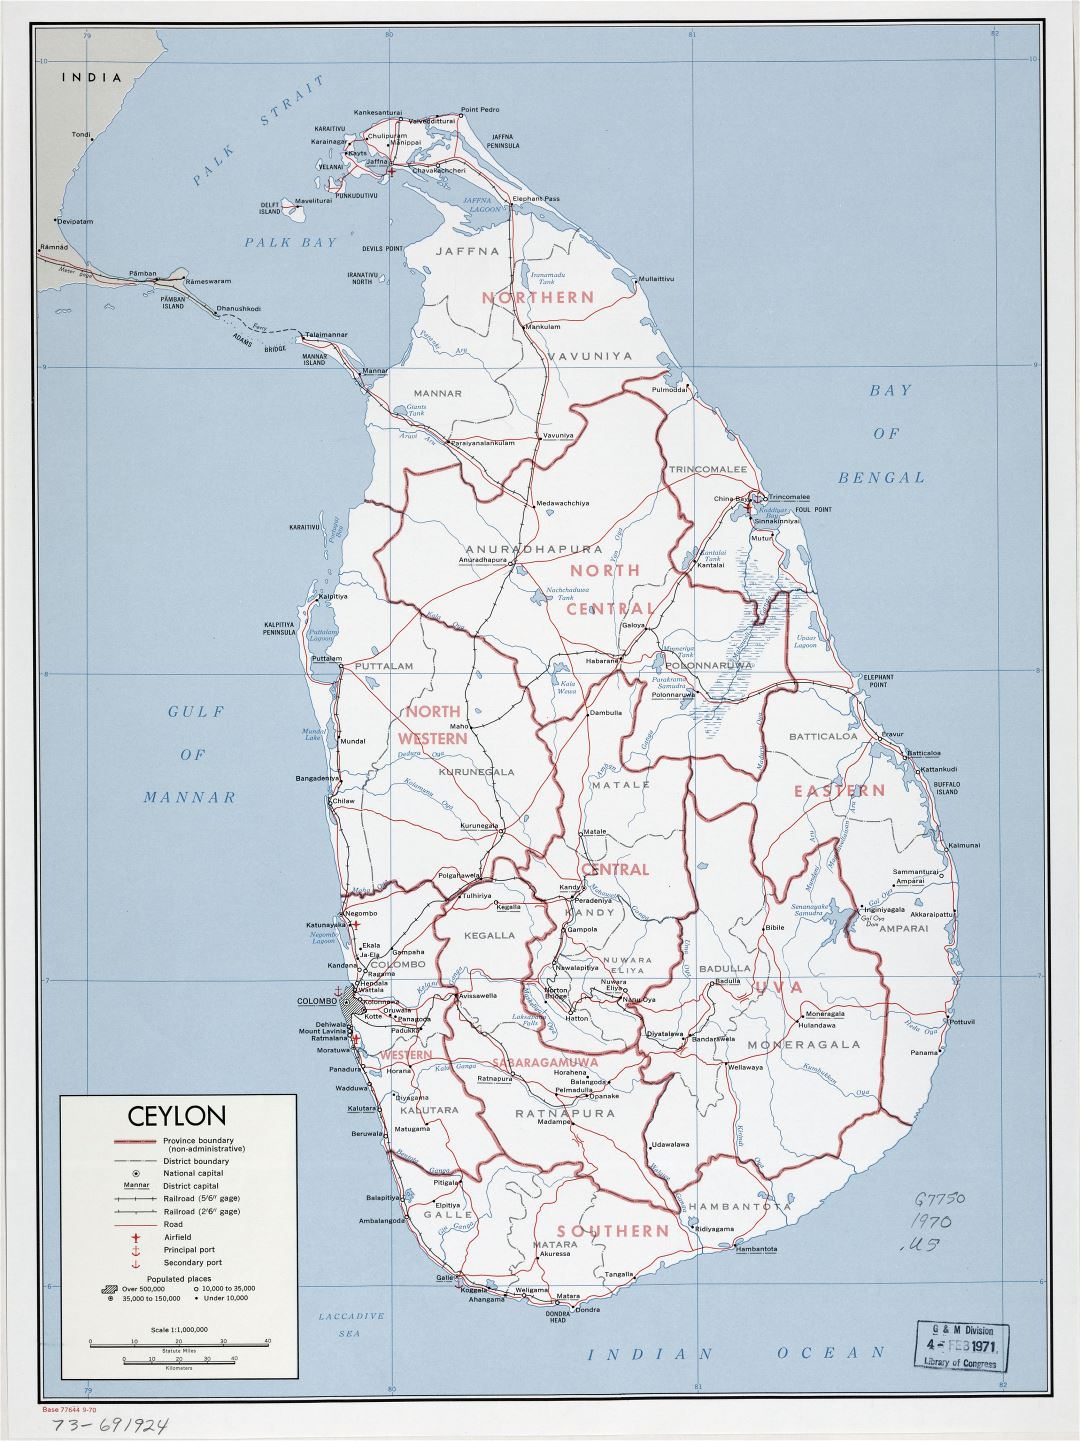 Grande detallado mapa político y administrativo de Sri Lanka Ceilán